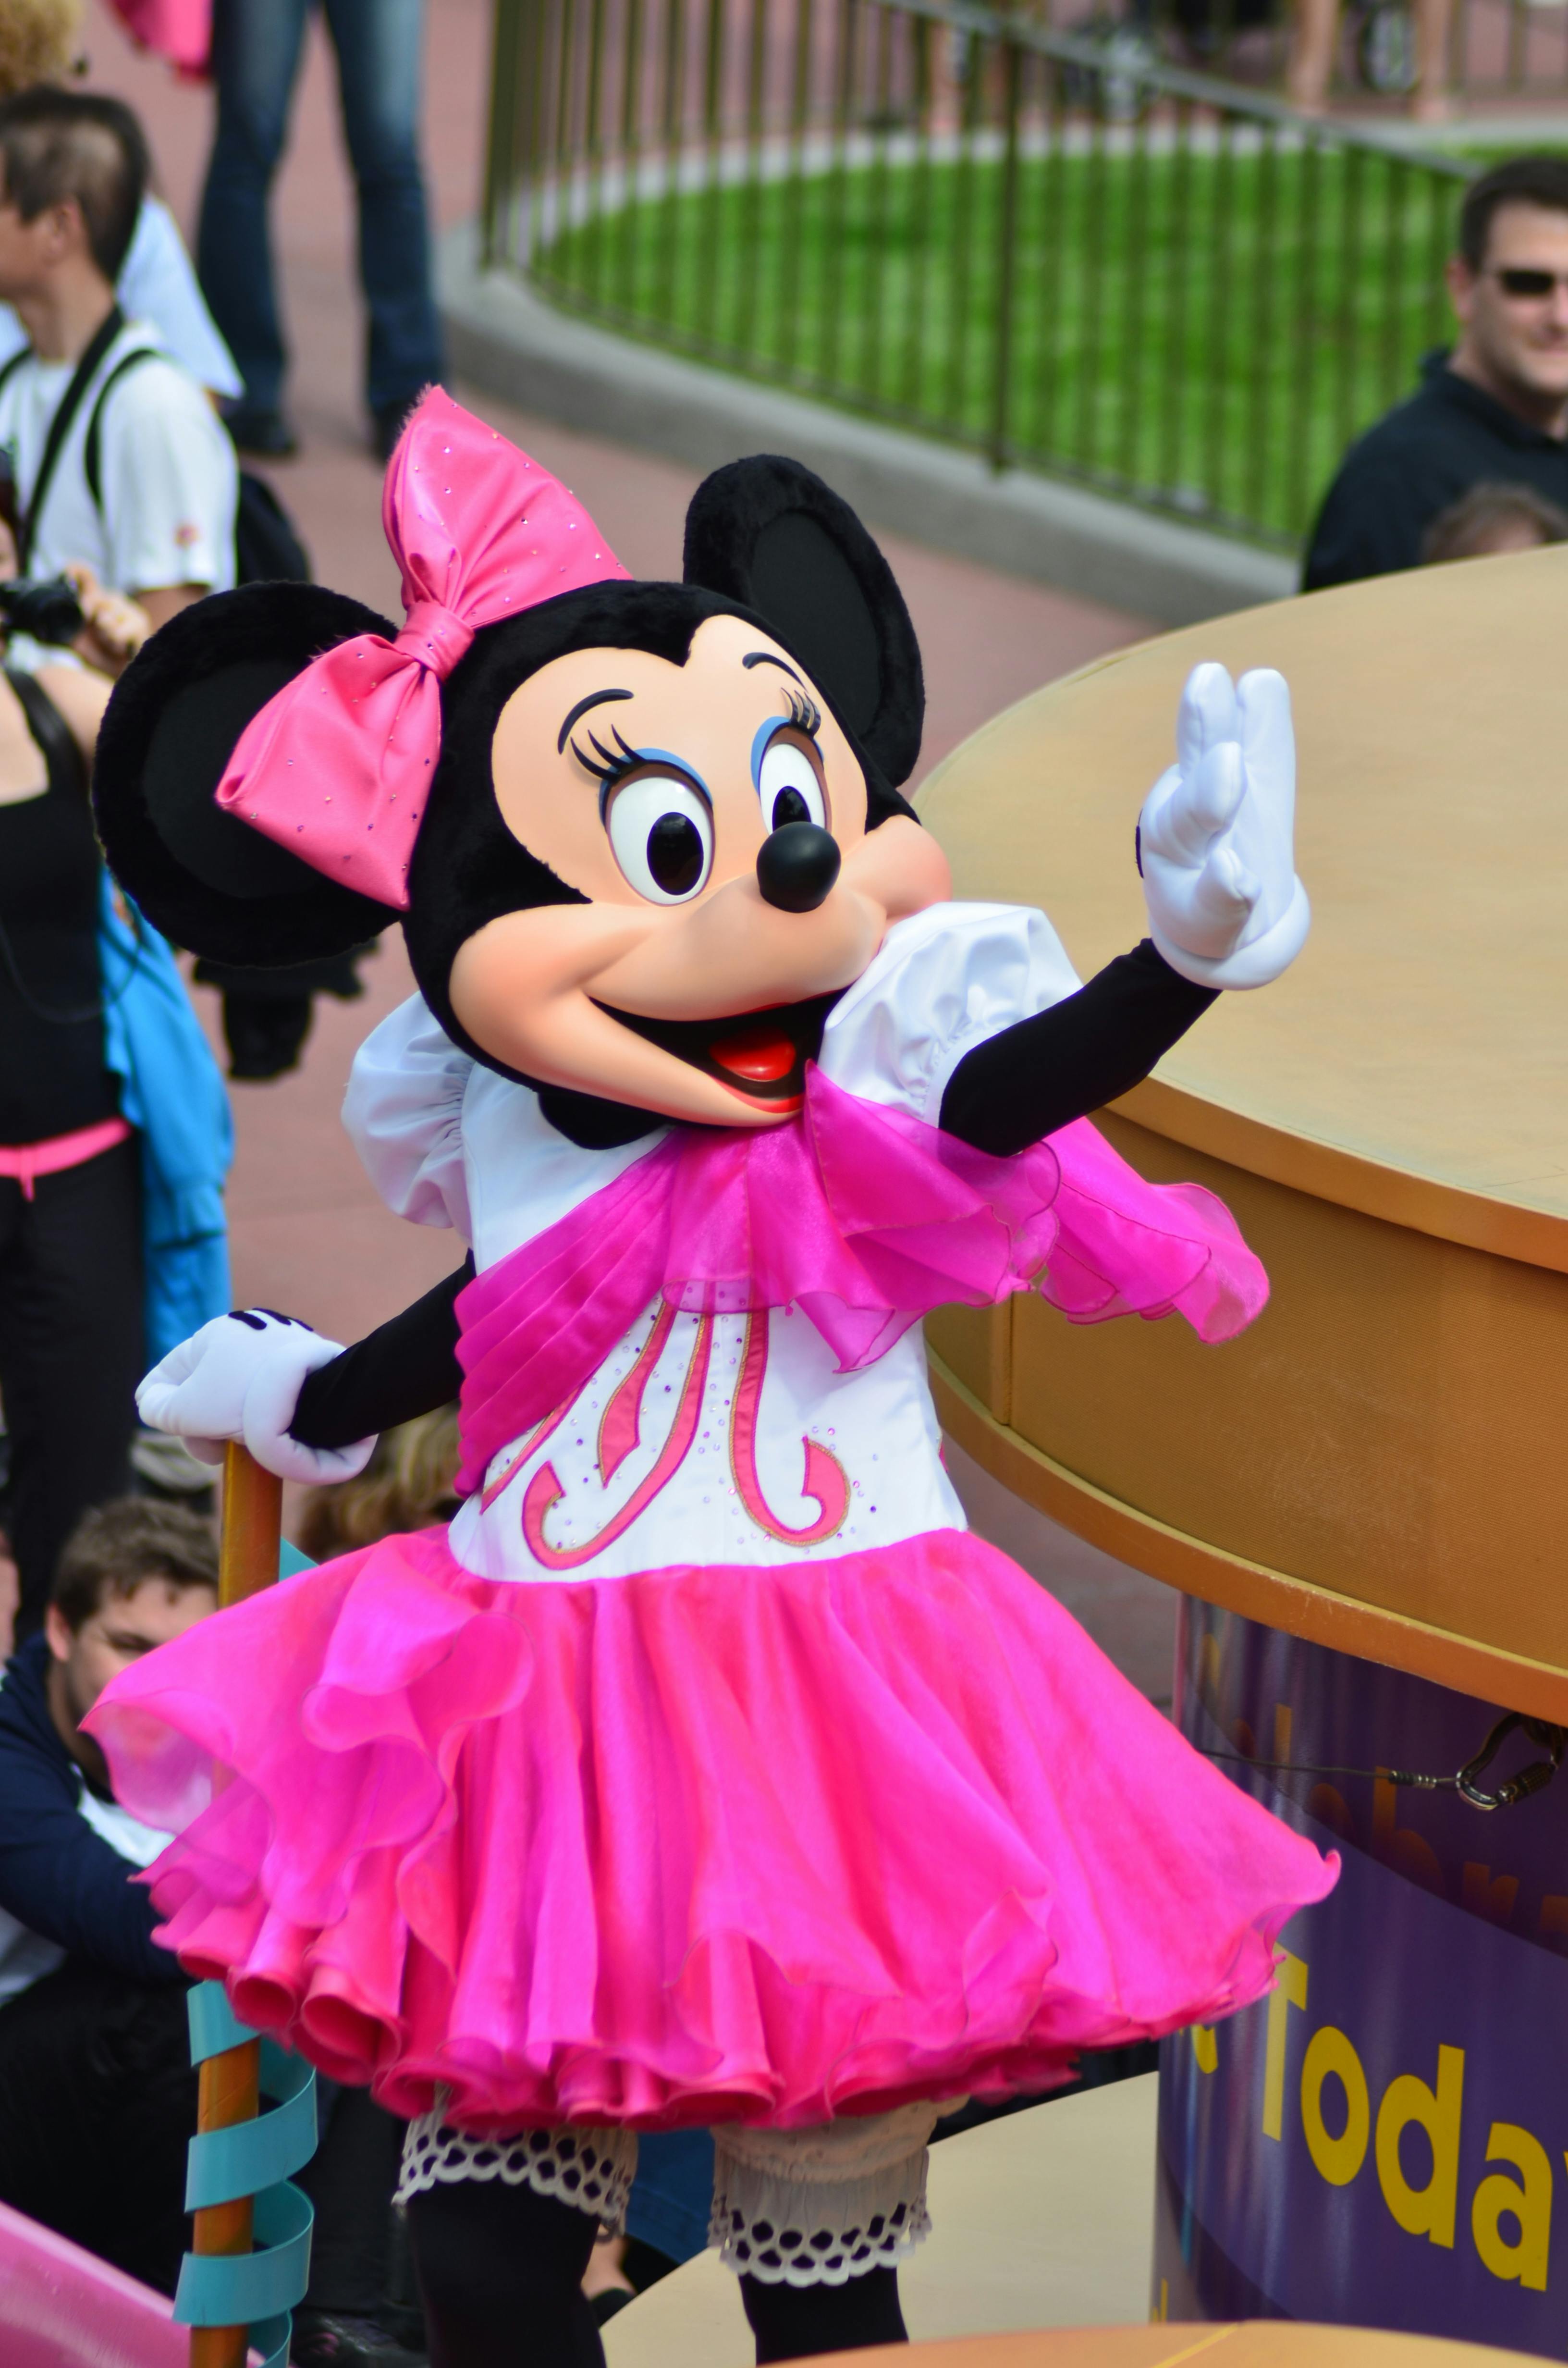 Une personne vêtue d'un costume de Minnie Mouse dans un parc d'attractions | Source : Pexels